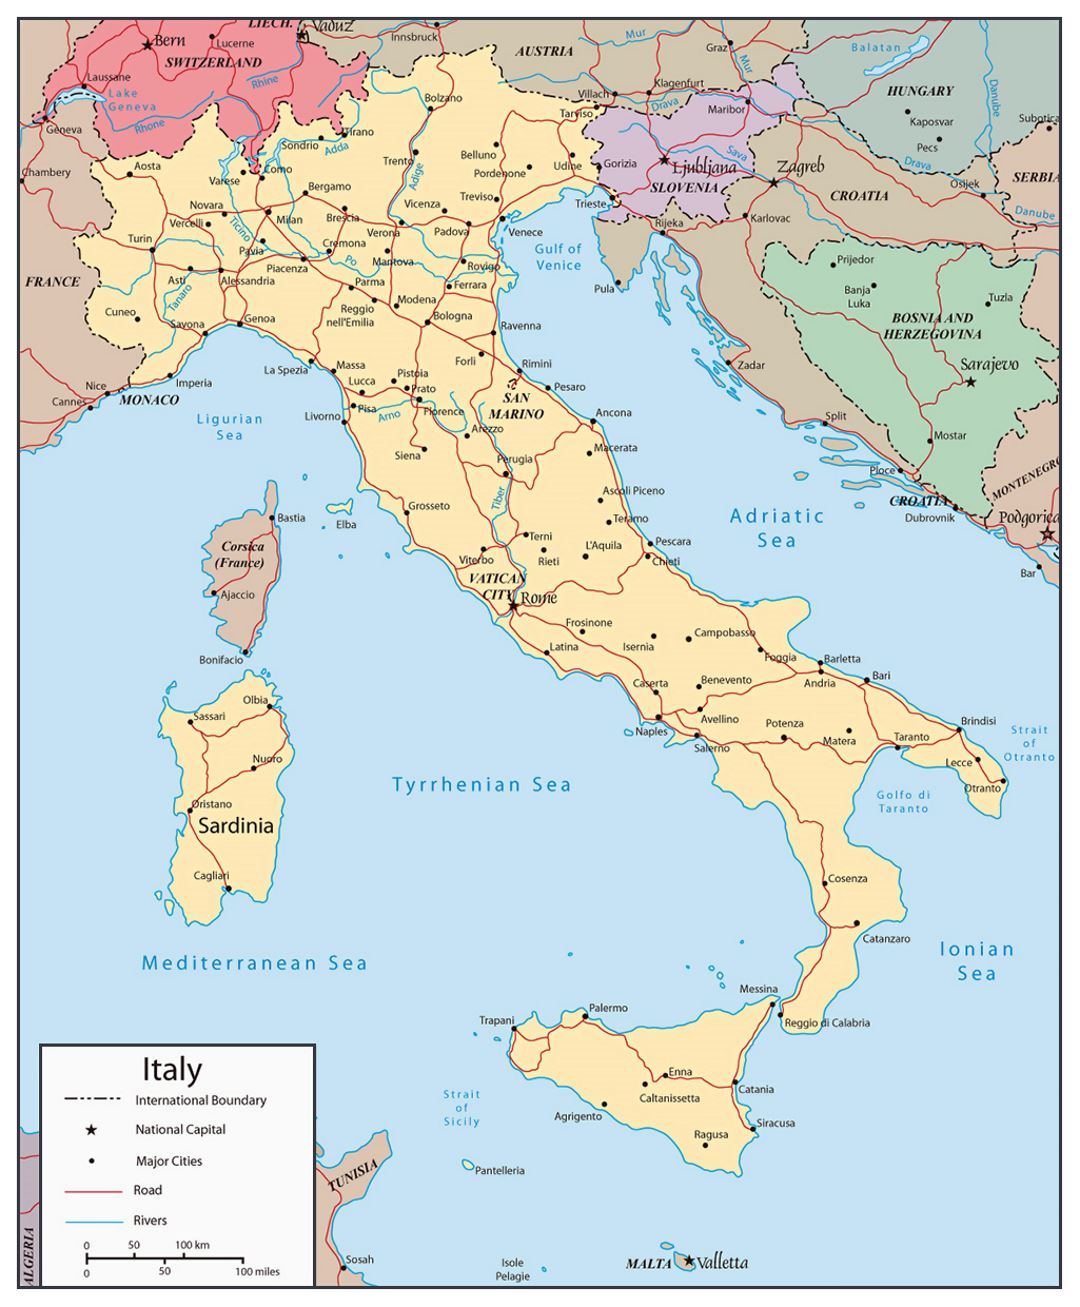 Mapa político detallado de Italia, con las carreteras, ríos y principales ciudades